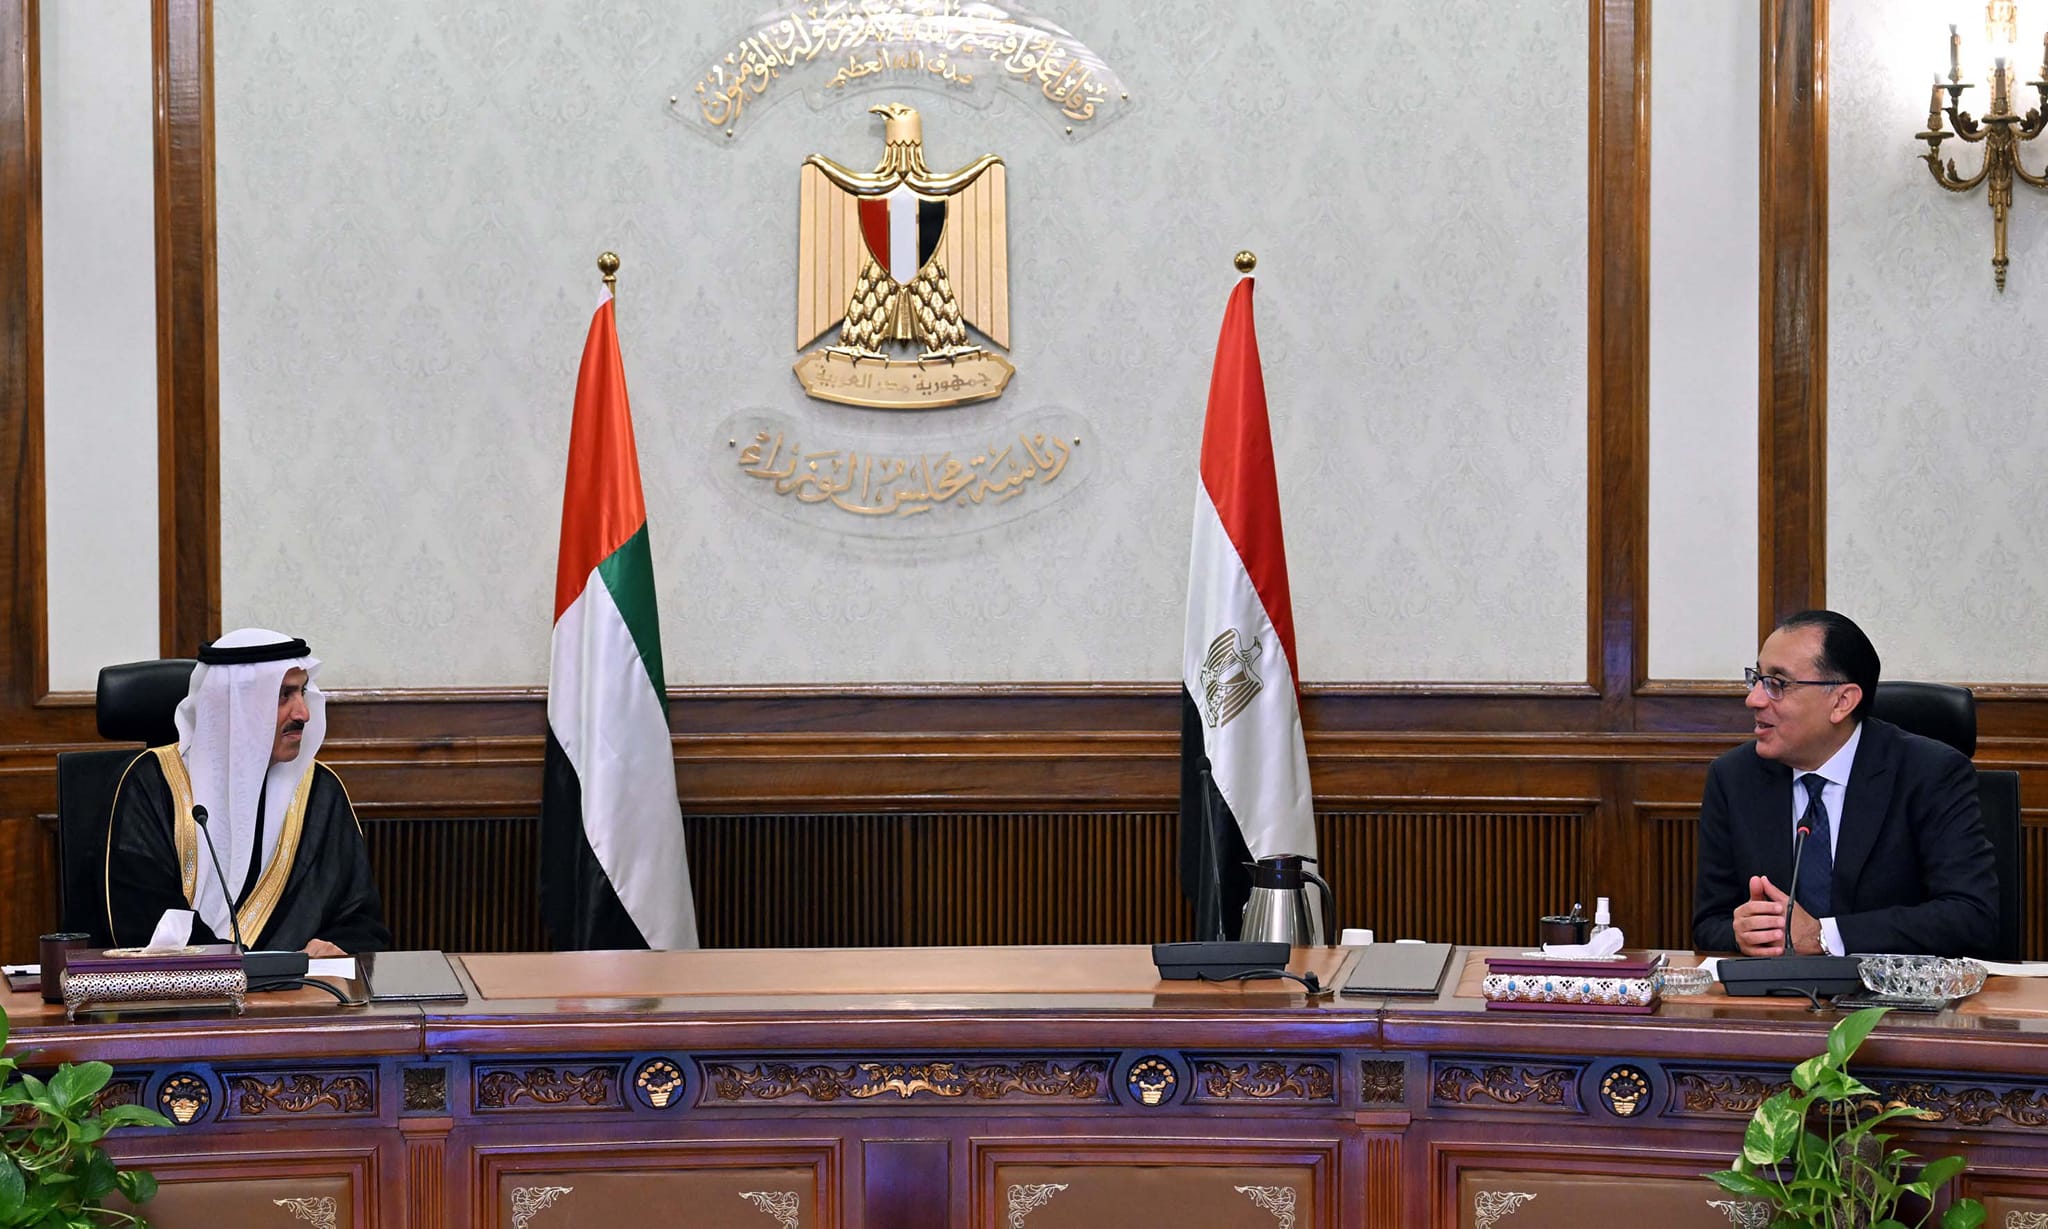 رئيس الوزراء يلتقي رئيس المجلس الوطني الاتحادي الإماراتي والوفد المرافق له